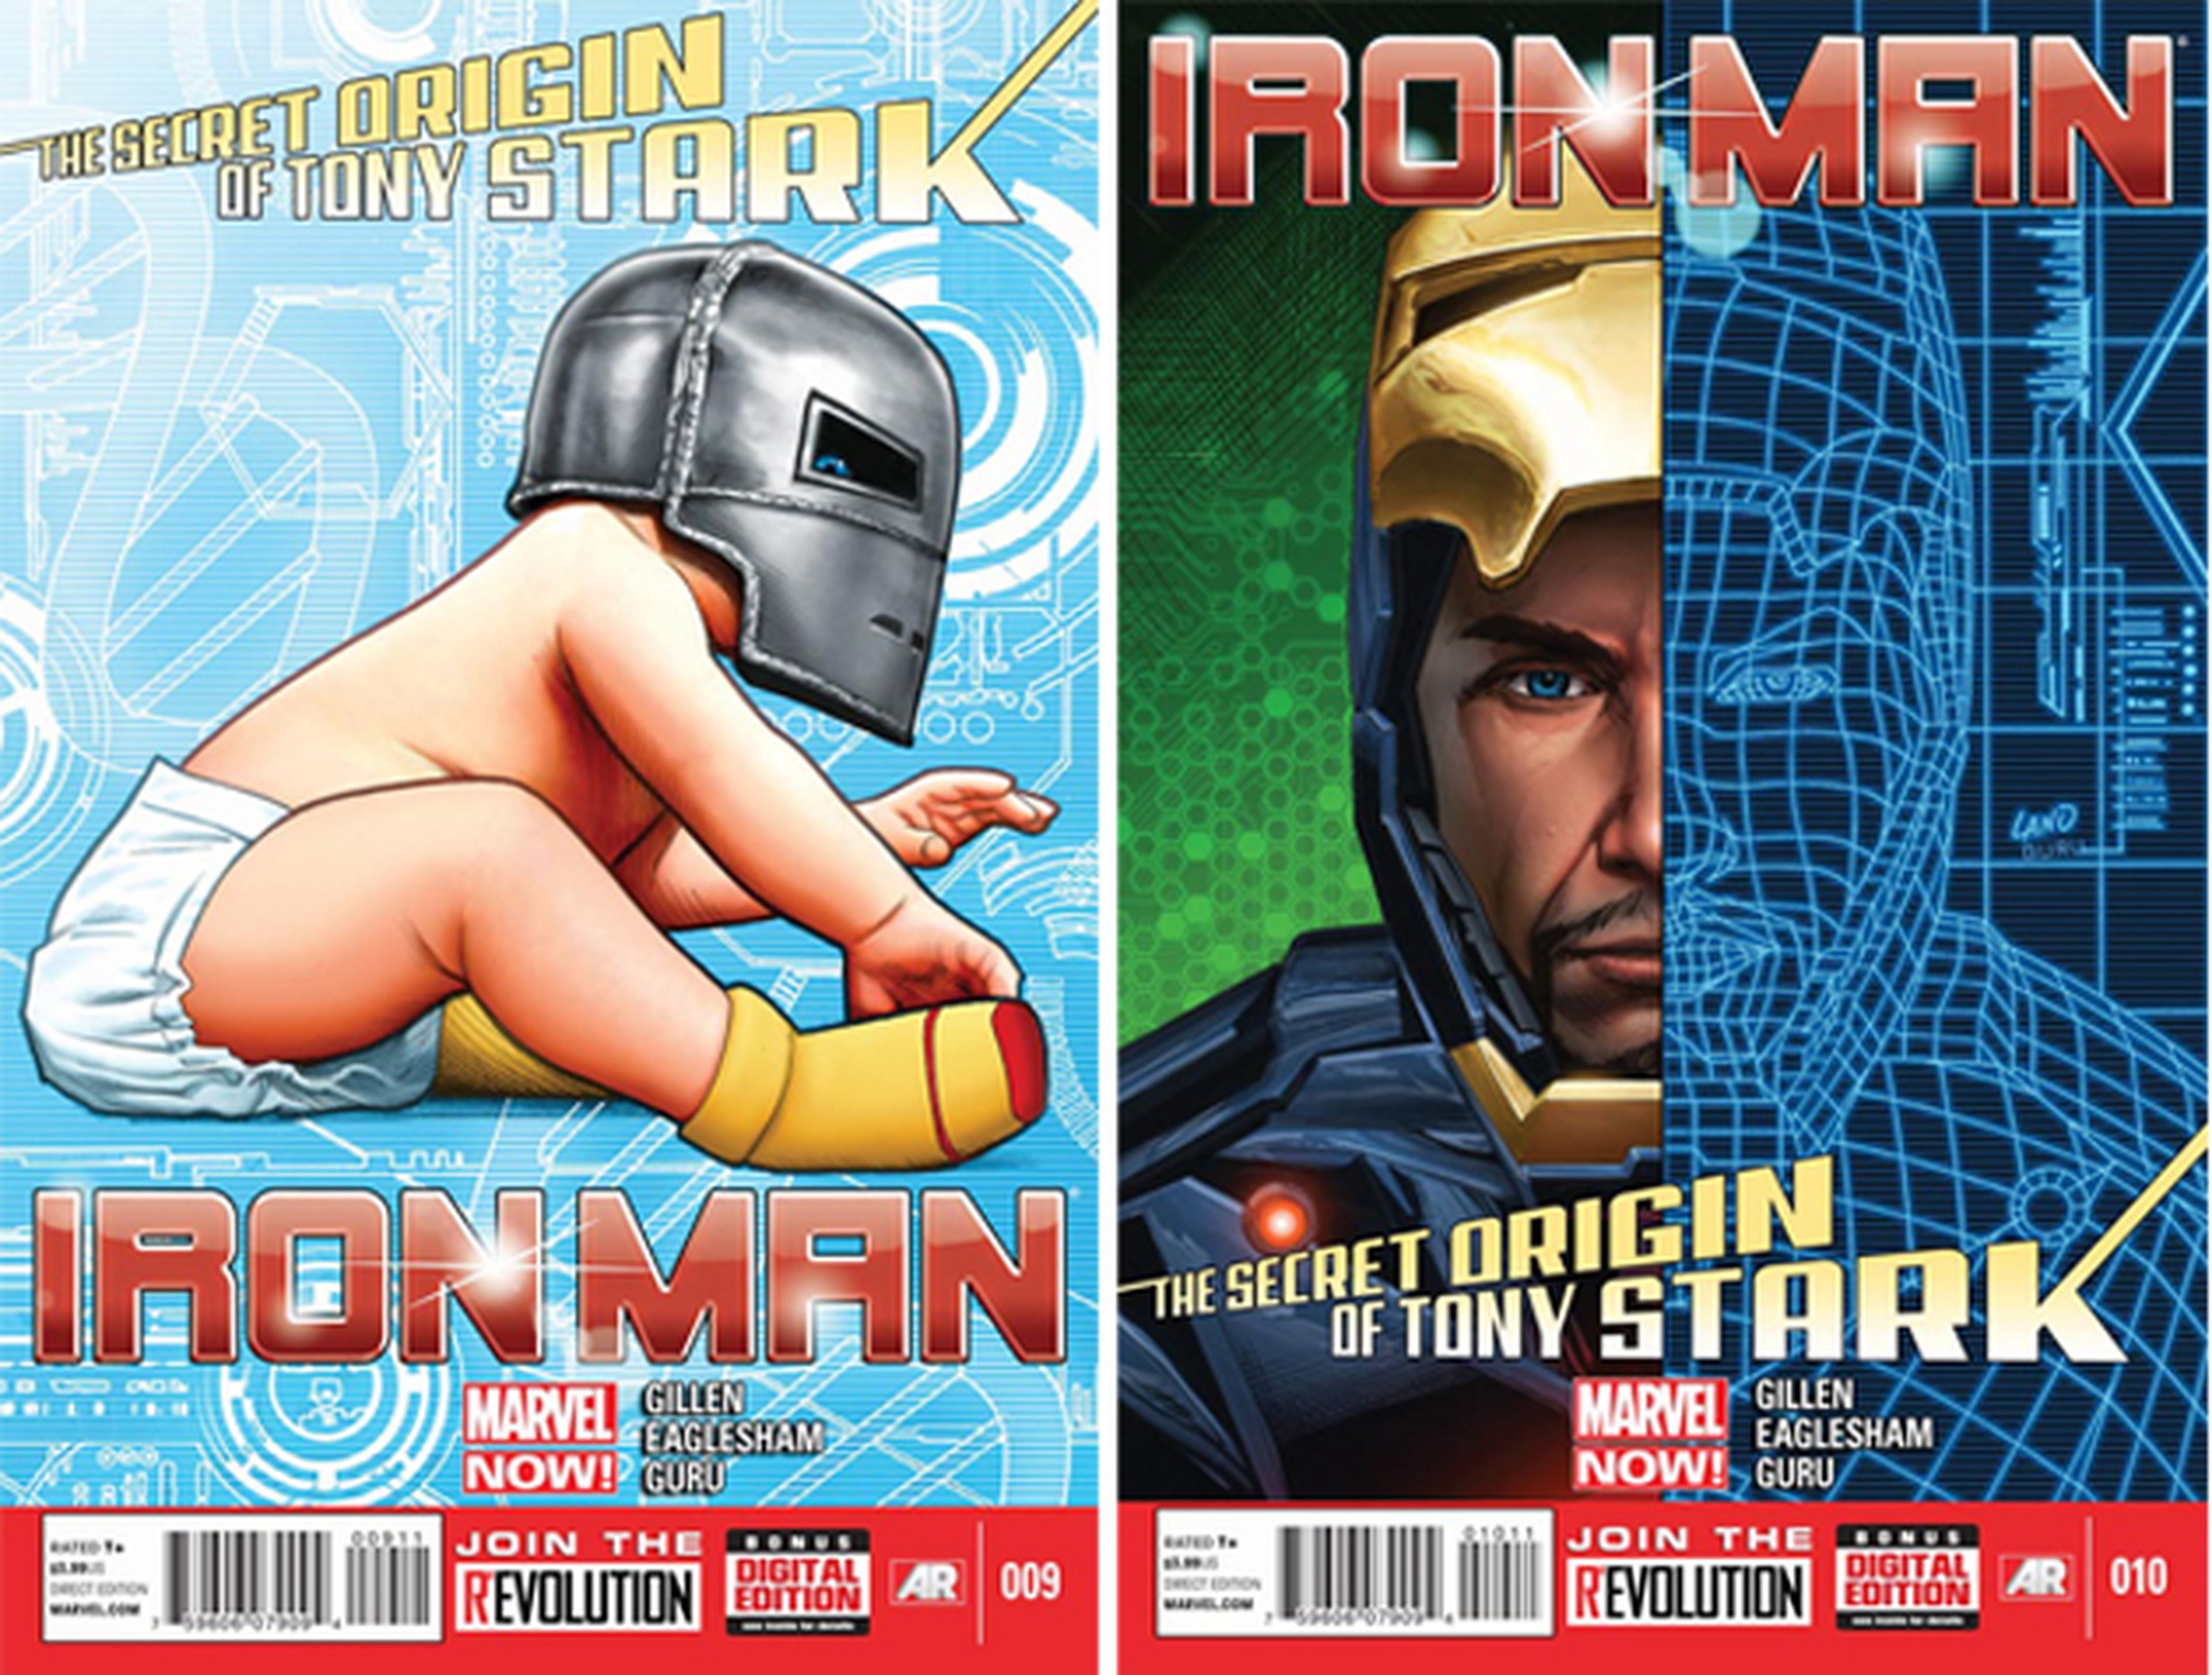 EEUU: Marvel prepara el Origen de Tony Stark